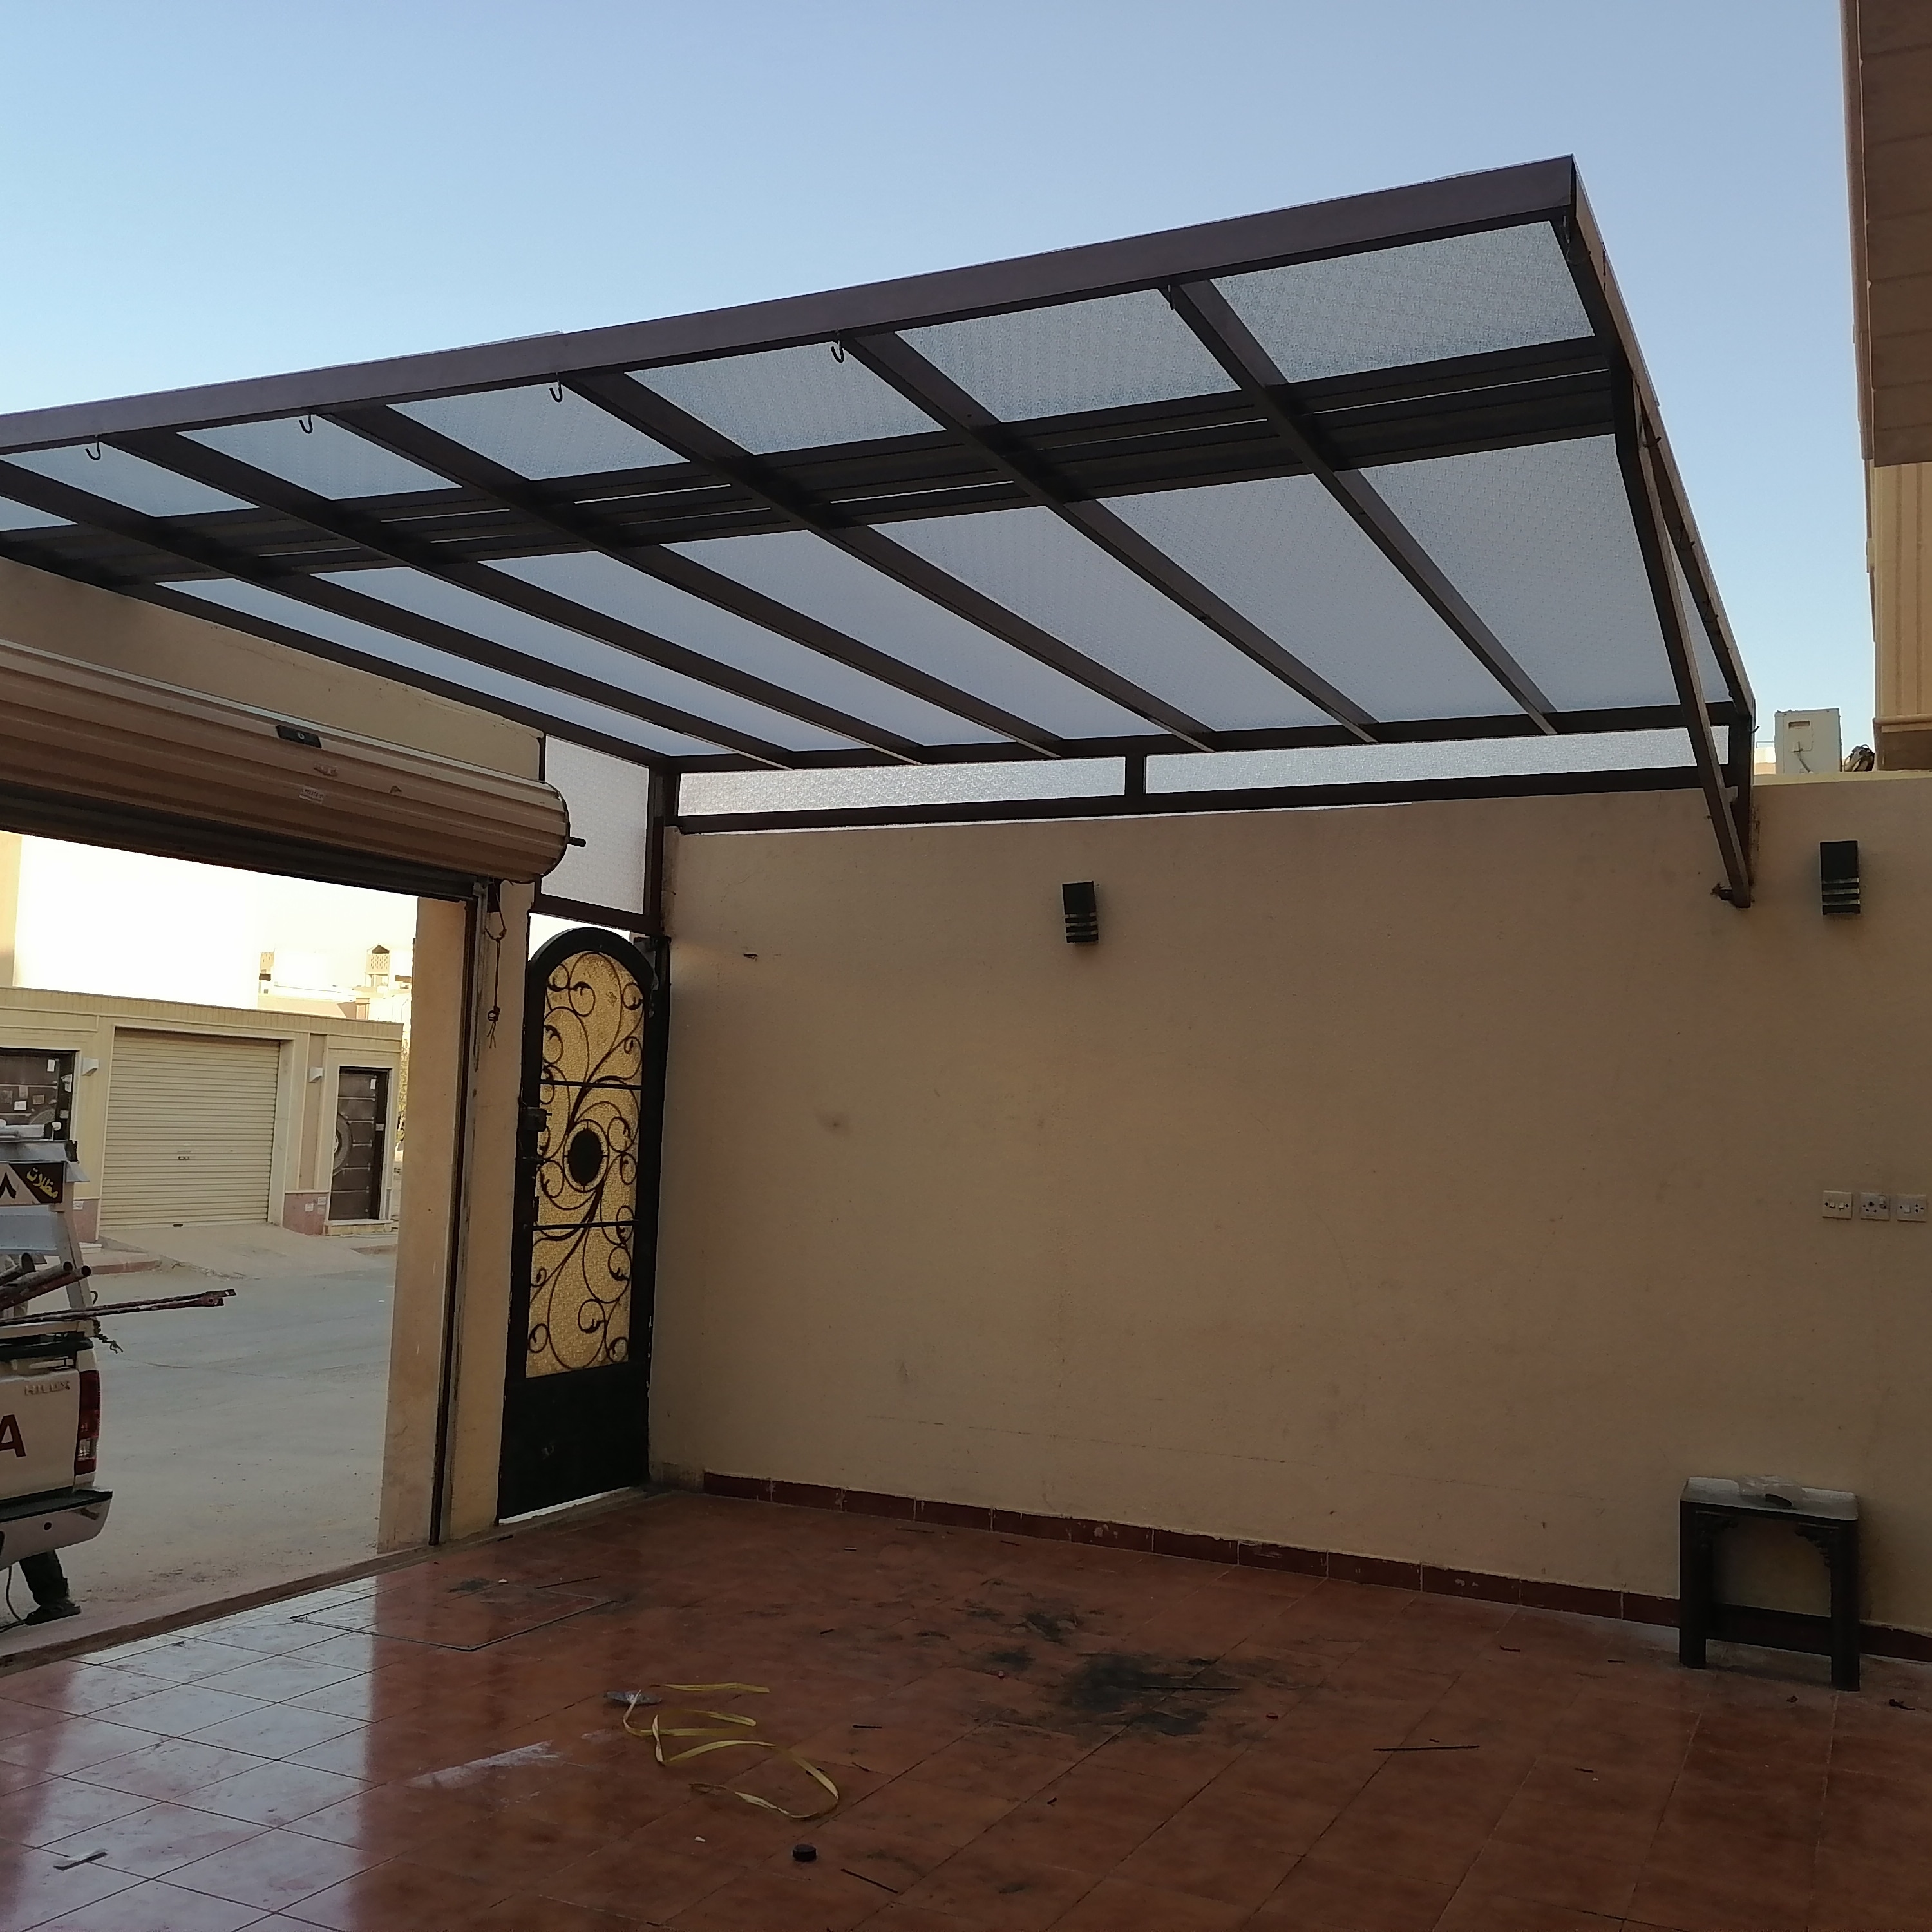 مظلات الرياض: حماية من الشمس والحرارة 0559190489 